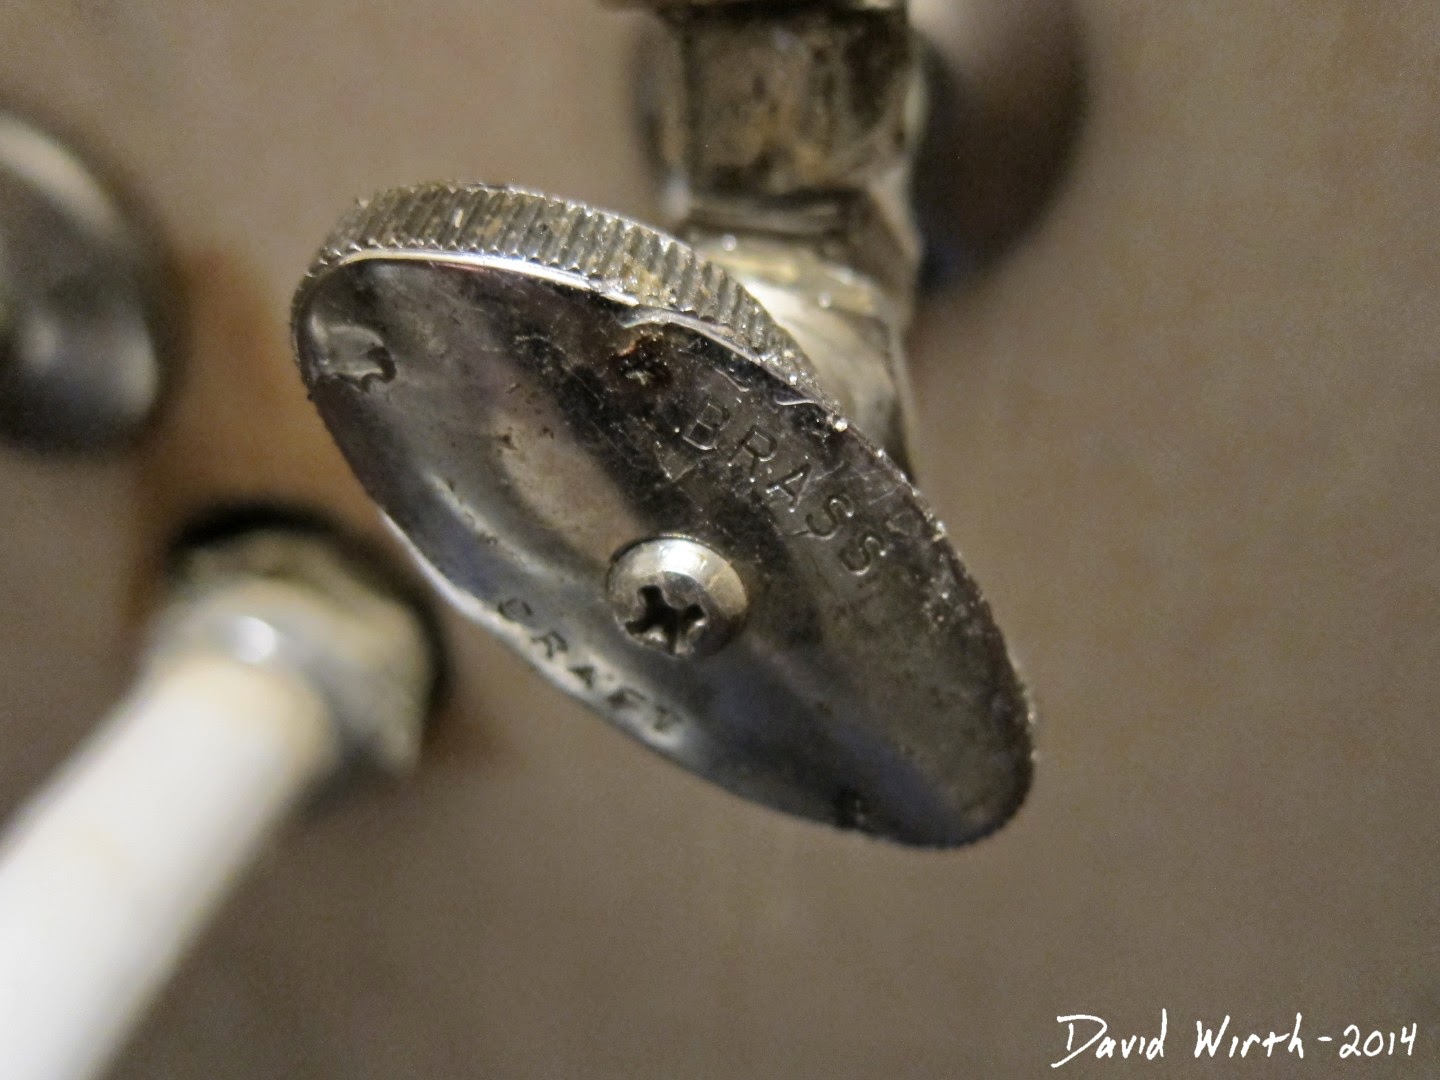 worst water shut off valve